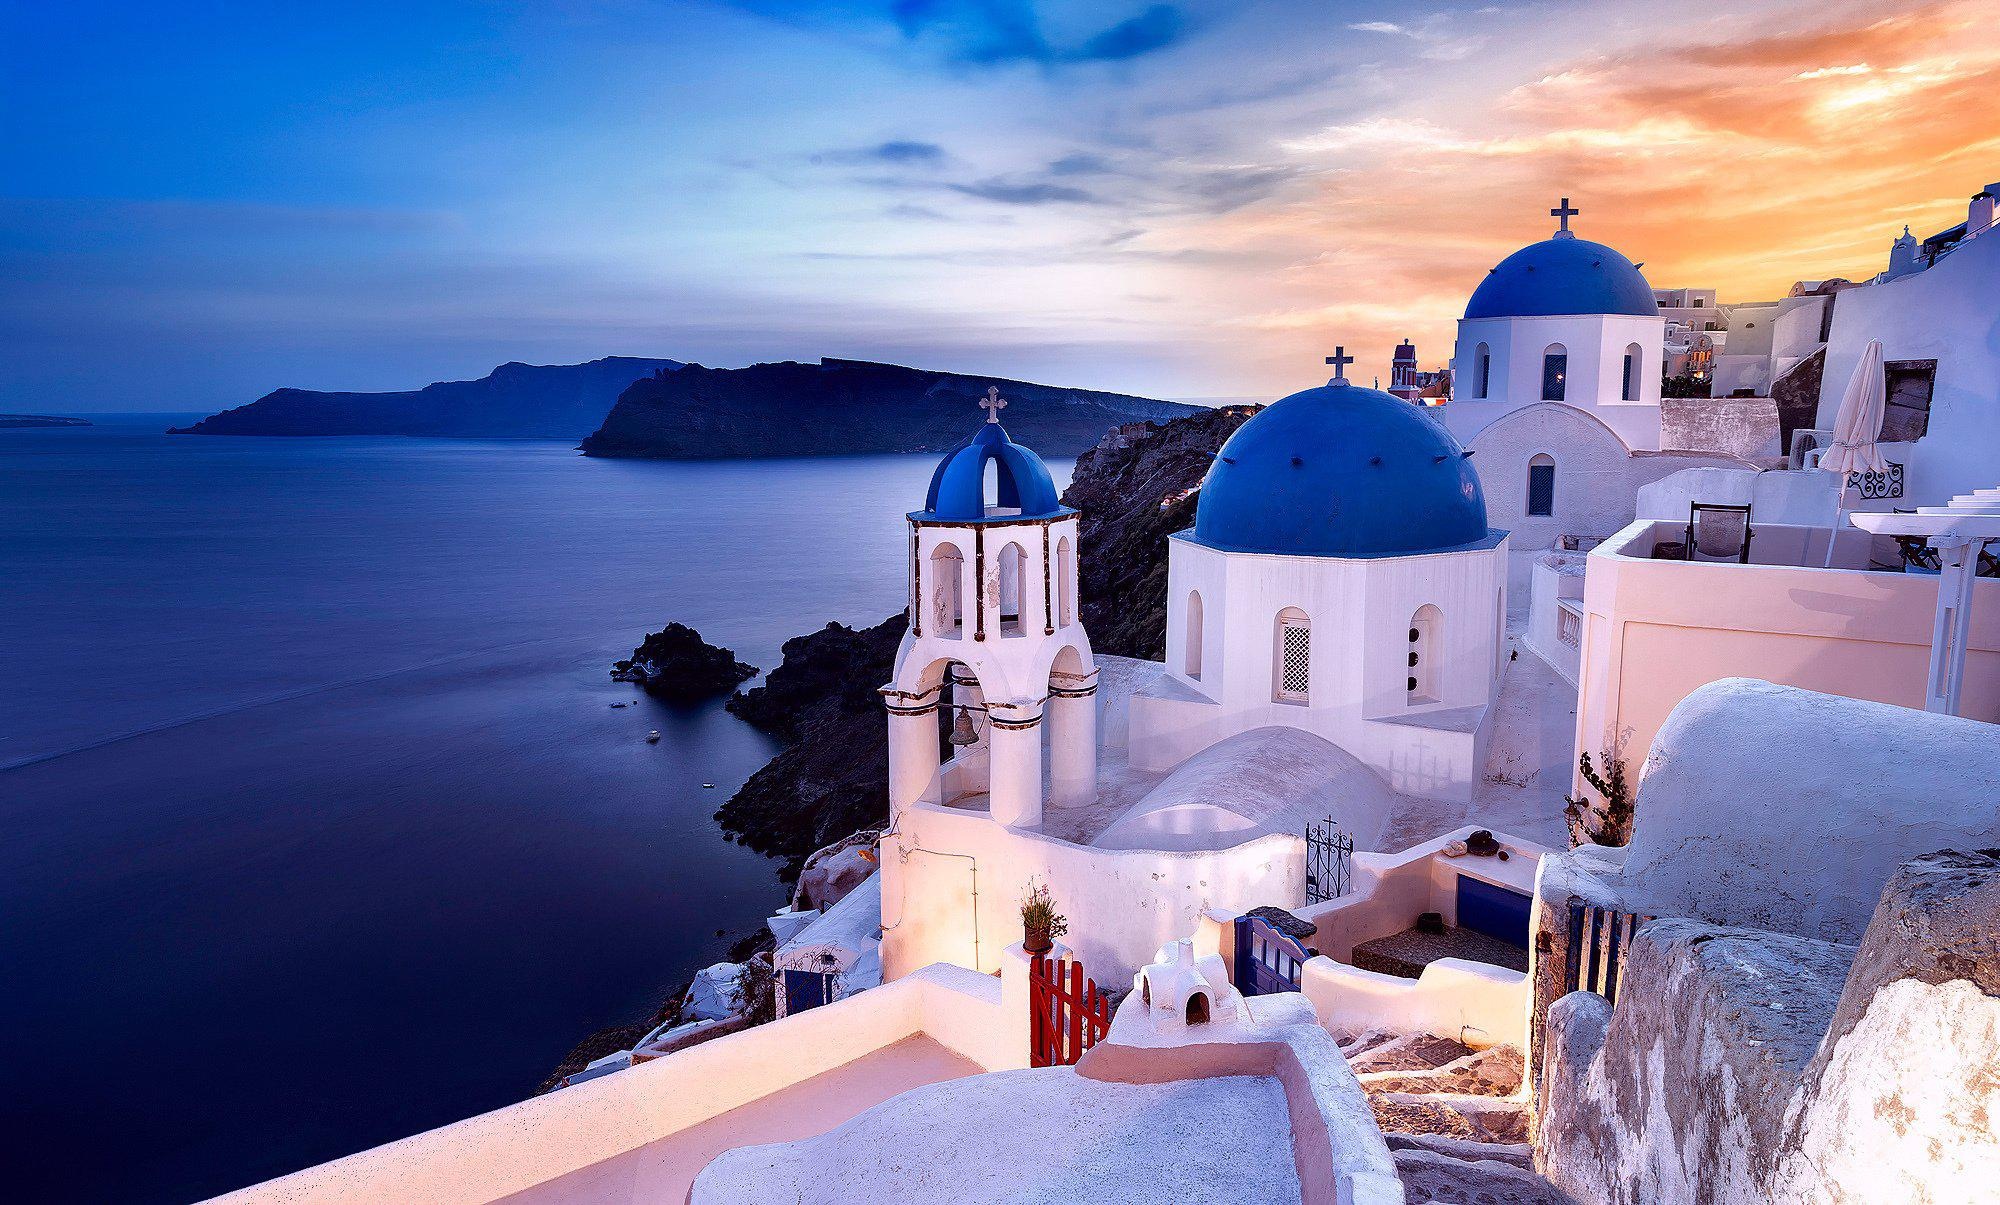 Greek island beauty, Breathtaking wallpapers, Santorini download, Greece travel, 2000x1210 HD Desktop